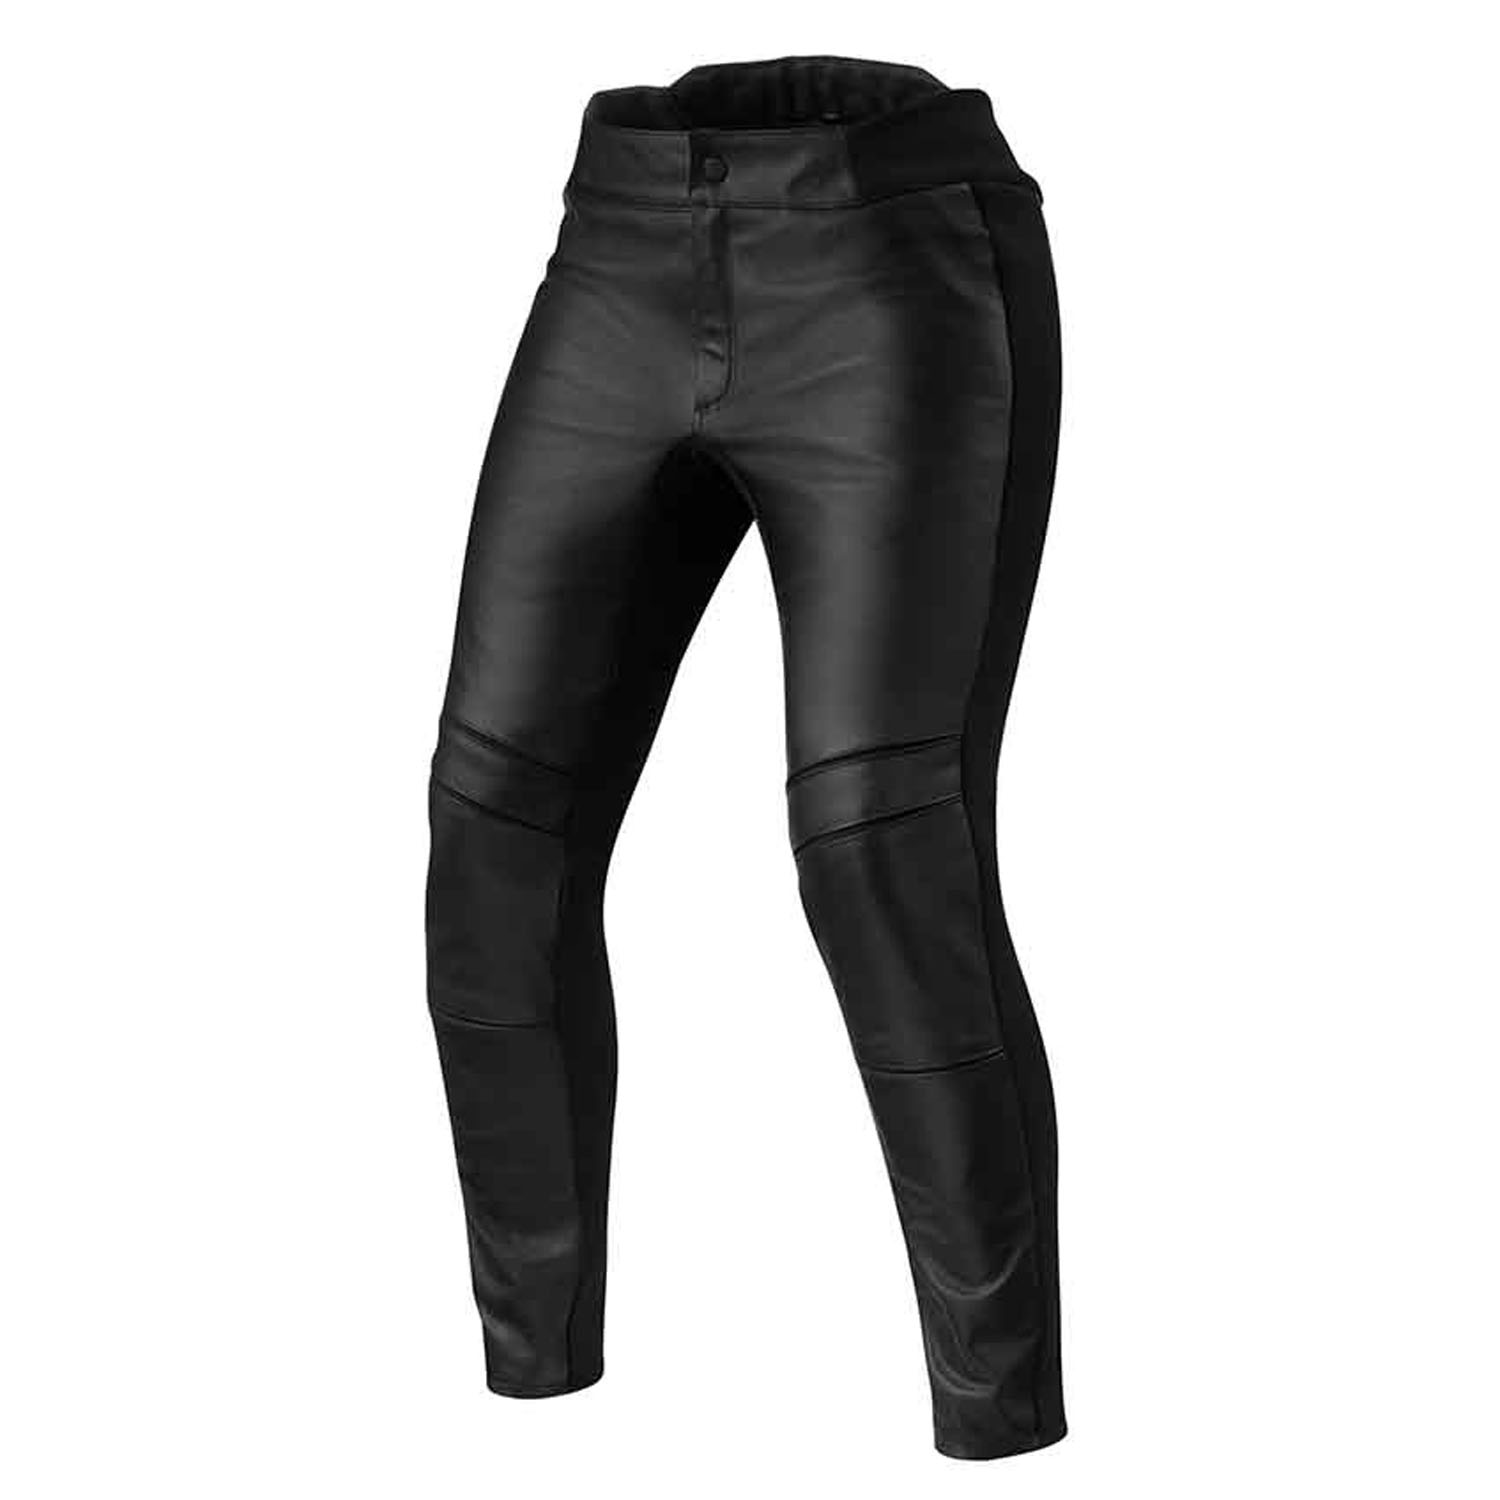 Image of REV'IT! Maci Ladies Black Standard Motorcycle Pants Size 38 ID 8700001359078